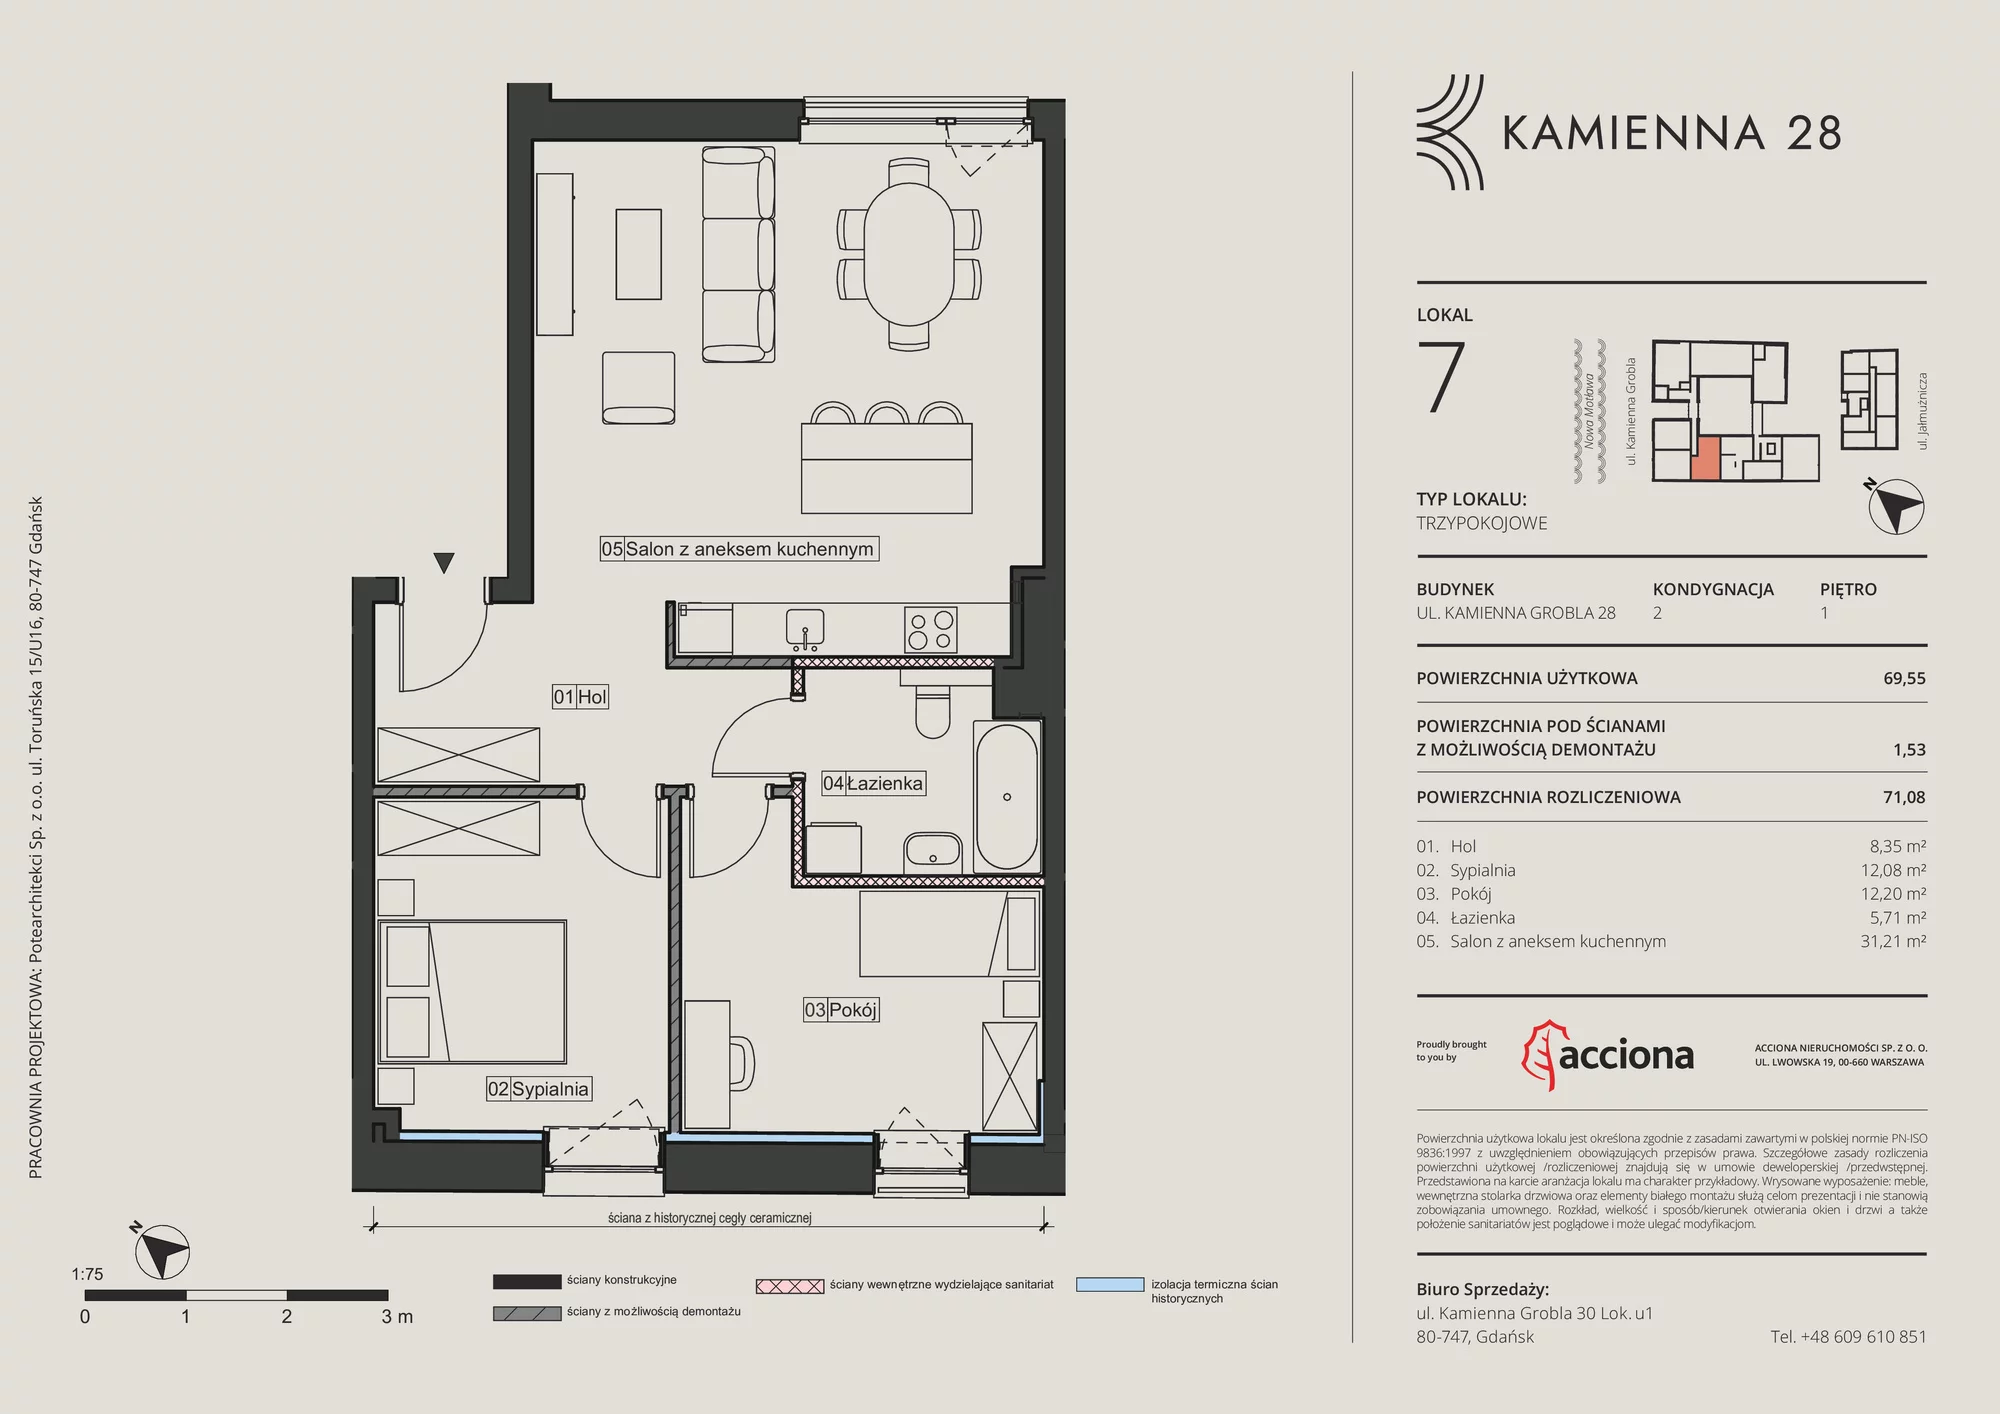 Apartament 71,08 m², piętro 1, oferta nr 28.7, Kamienna 28, Gdańsk, Śródmieście, Dolne Miasto, ul. Kamienna Grobla 28/29